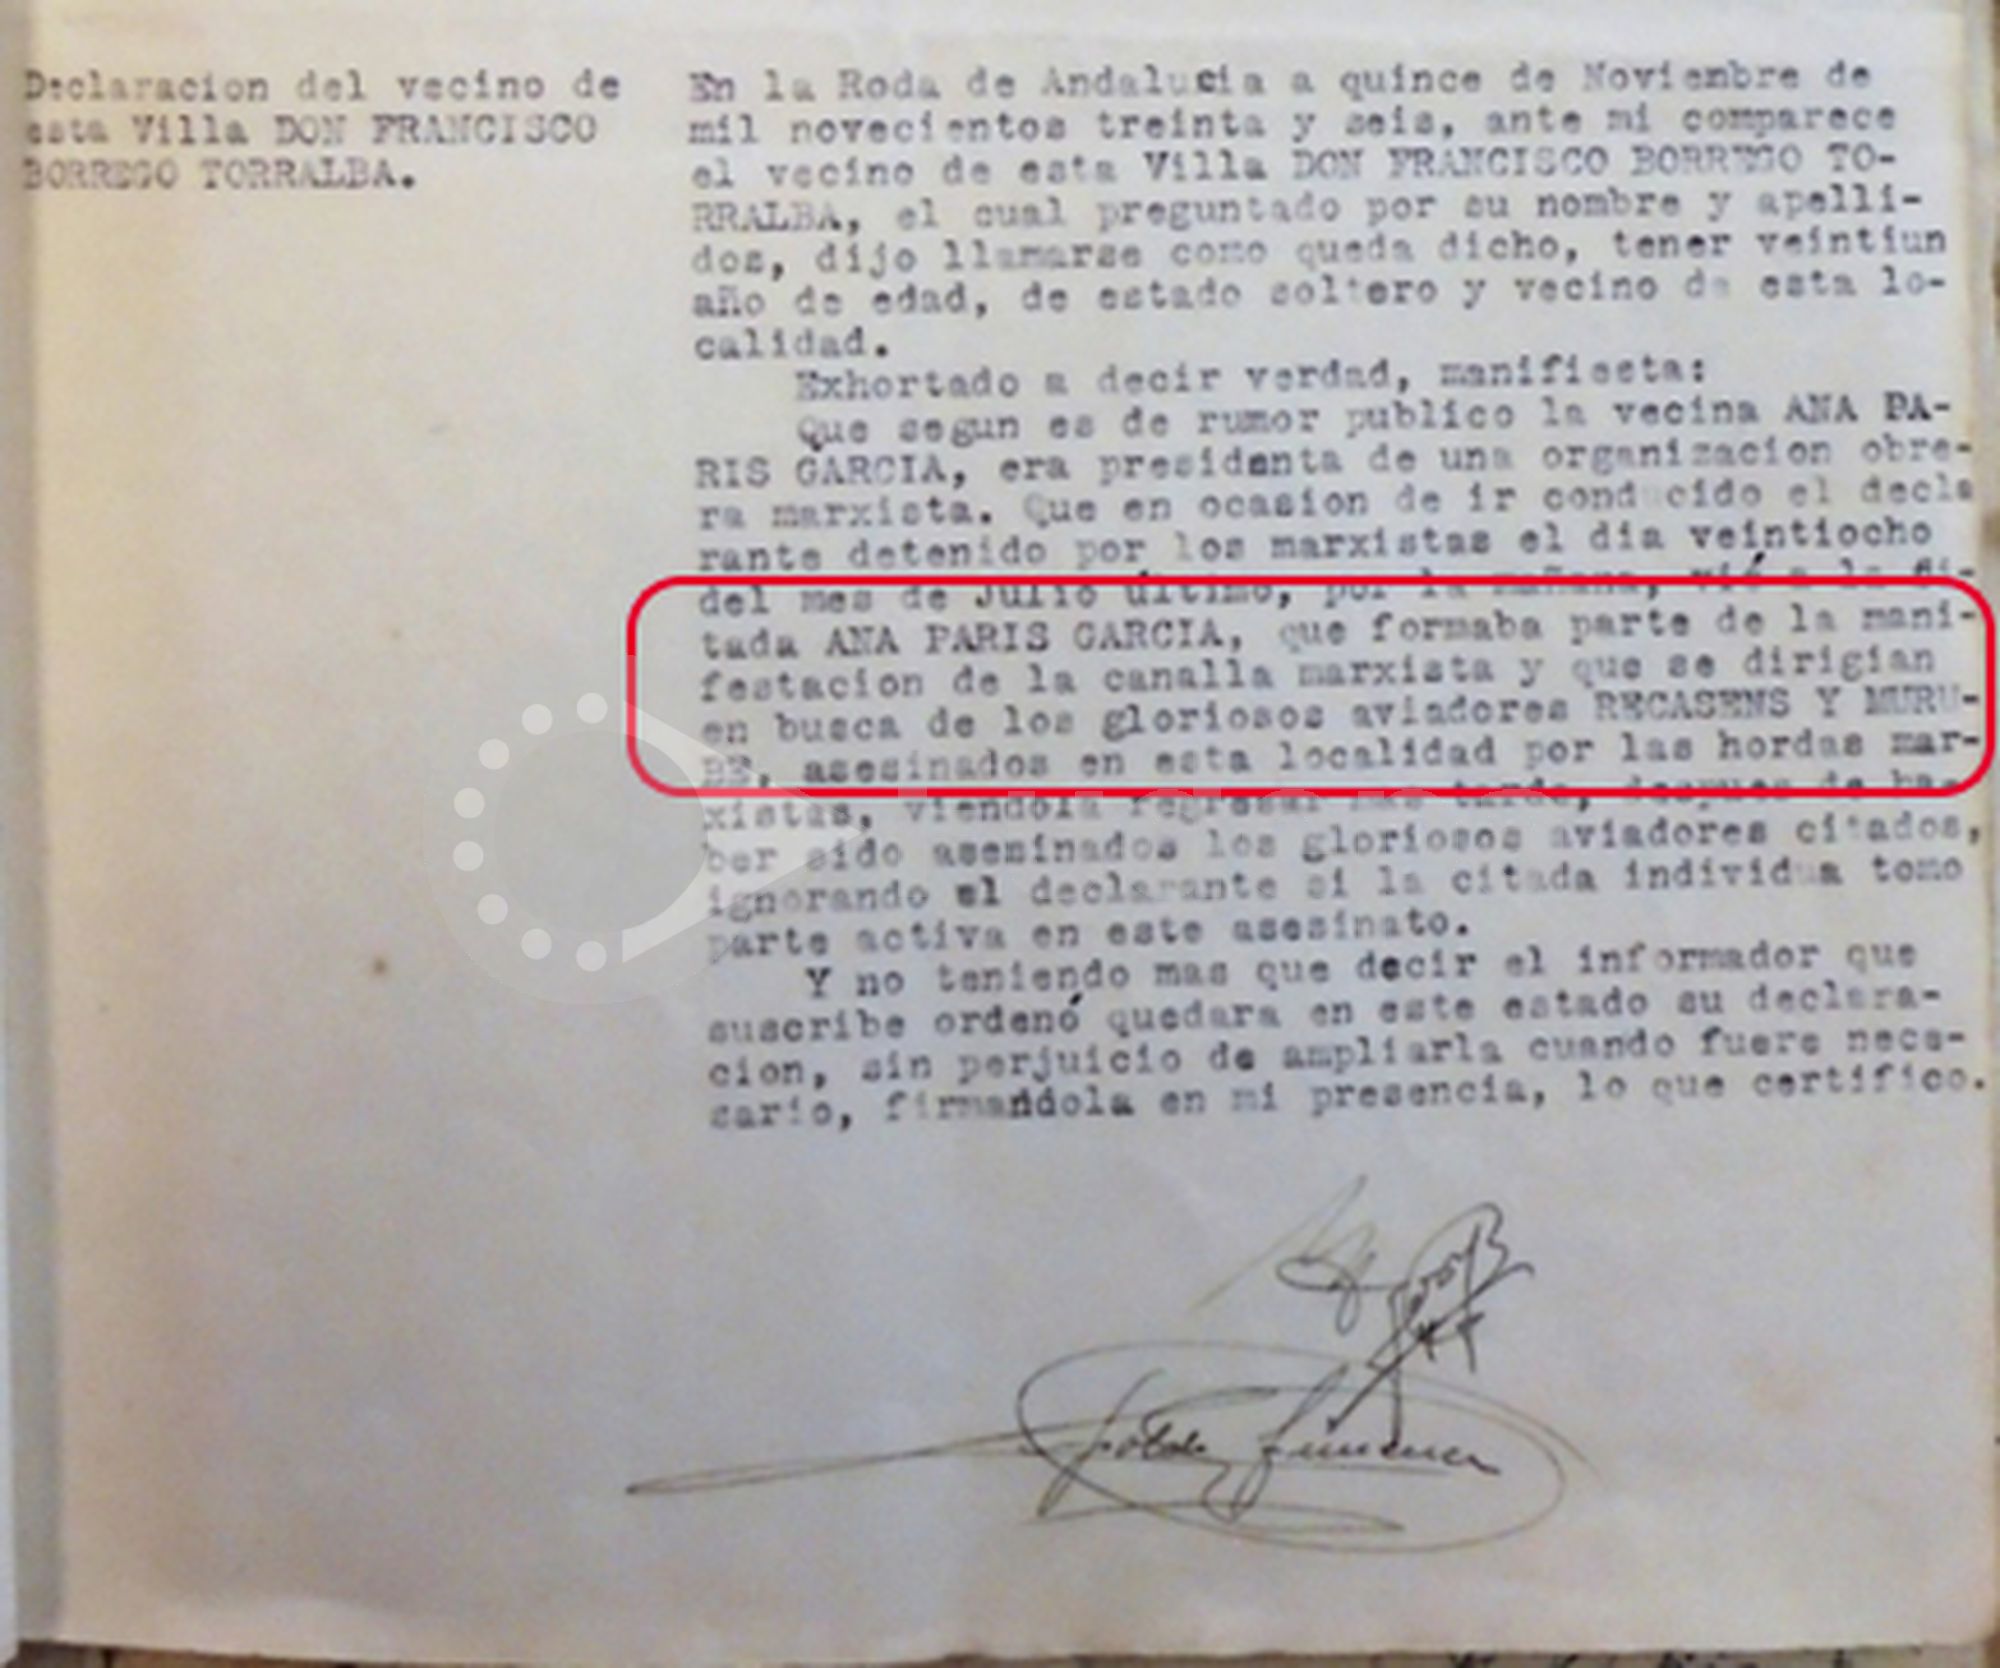 Declaración de un vecino de la Roda, sobre la participación de Ana París García en la muerte de los aviadores Tomás Murube y Sebastián Recasens.